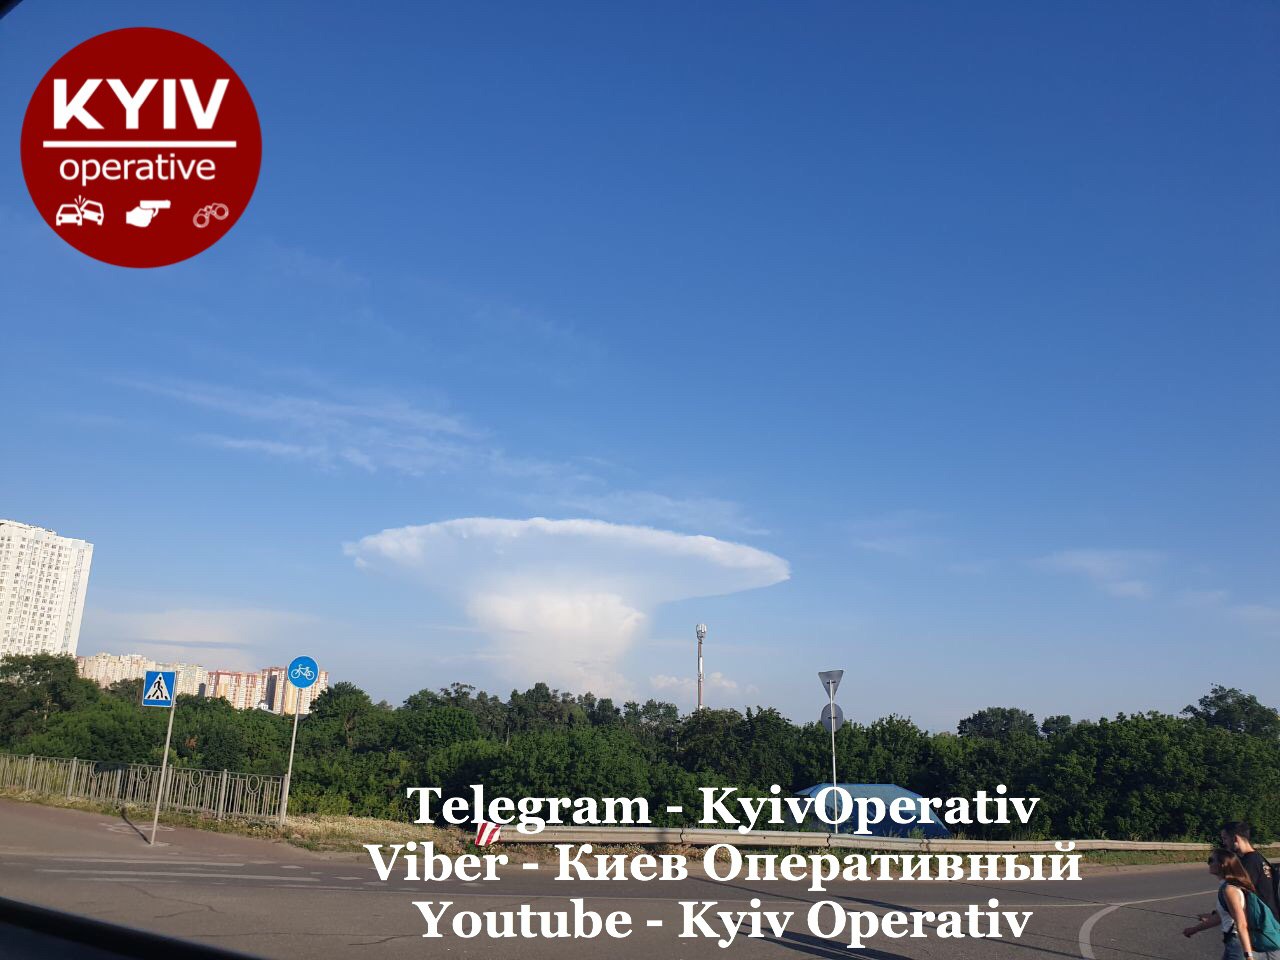 В Сети обсуждают удивительное облако в форме гриба над Киевом. Фото: Оперативный Киев